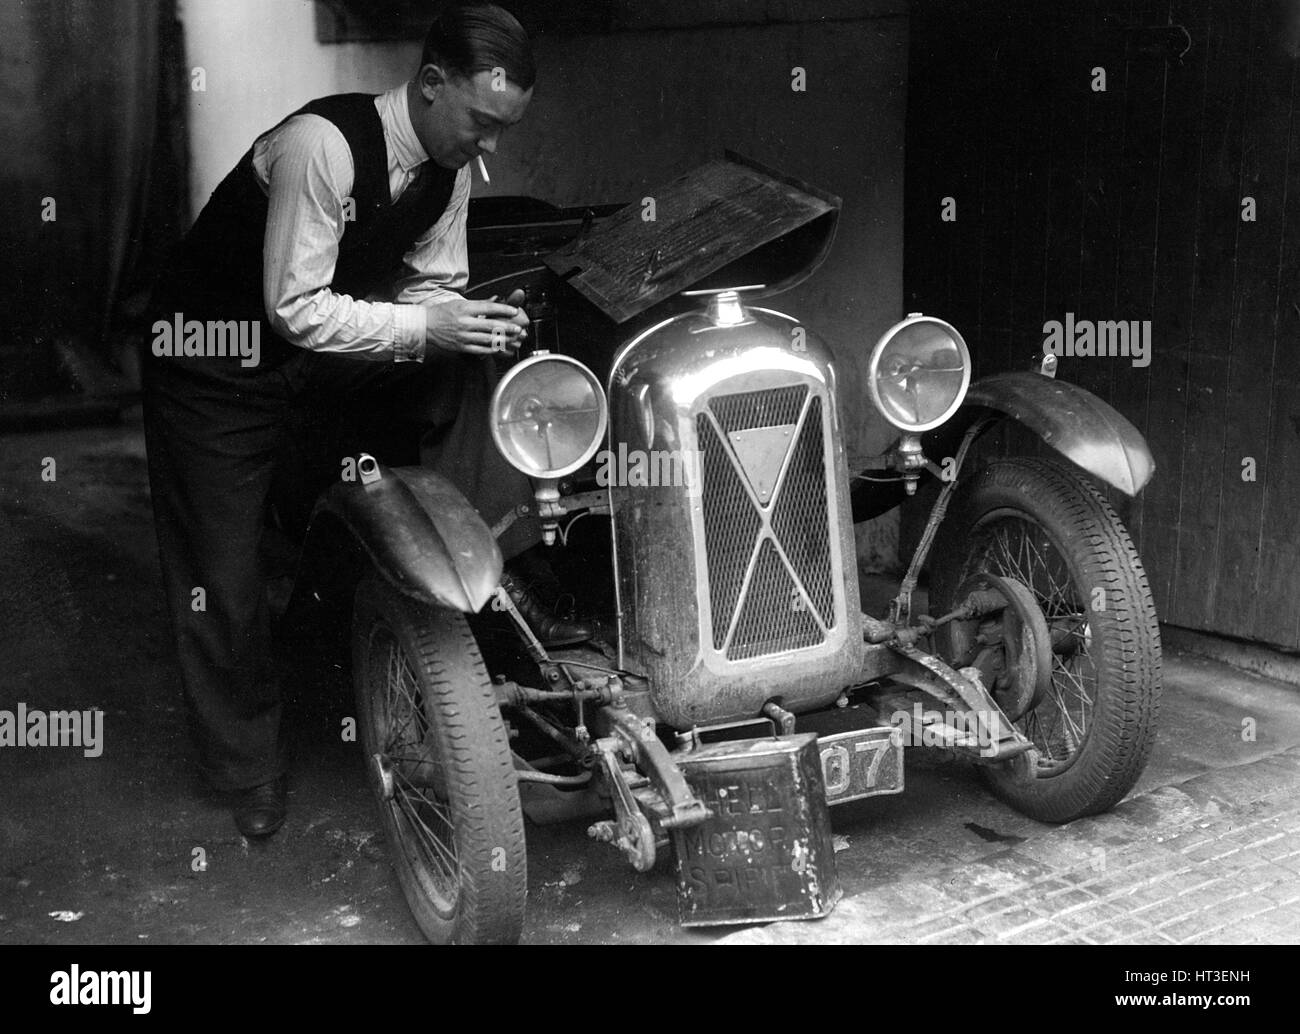 Geoffrey Baker working on a Salmson 1090cc car. Artist: Bill Brunell. Stock Photo